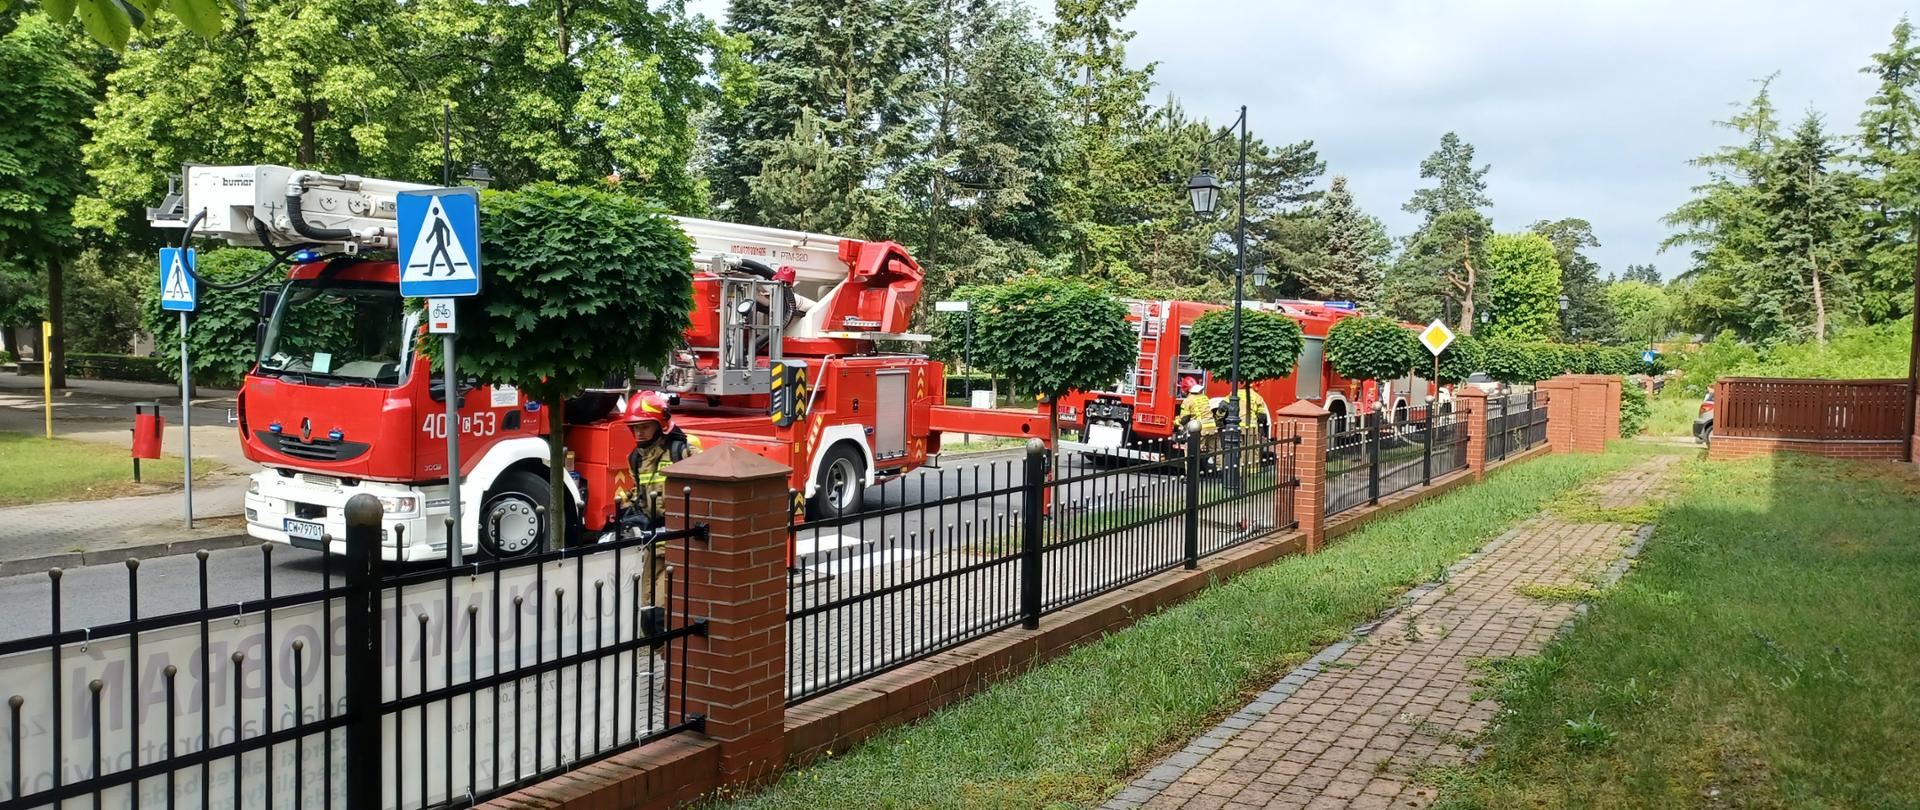 Na zdjęciu widać stojące na asfaltowej drodze koloru szarego trzy czerwone pojazdy pożarnicze w tym jeden podnośnik z drabiną. Wzdłuż drogi miejskiej usytuowane są drzewa koloru zielonego oraz oznakowanie drogowe, przejście dla pieszych i droga z pierwszeństwem przejazdu. Przy samochodach stoją strażacy ubrani w piaskowe umundurowanie i czerwone hełmy, którzy wyjmują sprzęt ze skrytek samochodowych. Zdjęcie zrobiono z ternu posesji, na której odbywają się ćwiczenia. Posesja jest ogrodzona ozdobnym ogrodzeniem wykonanym z cegły oraz czarnymi dekoracyjnymi metalowymi przęsłami. Pogoda pochmurna bez opadów.